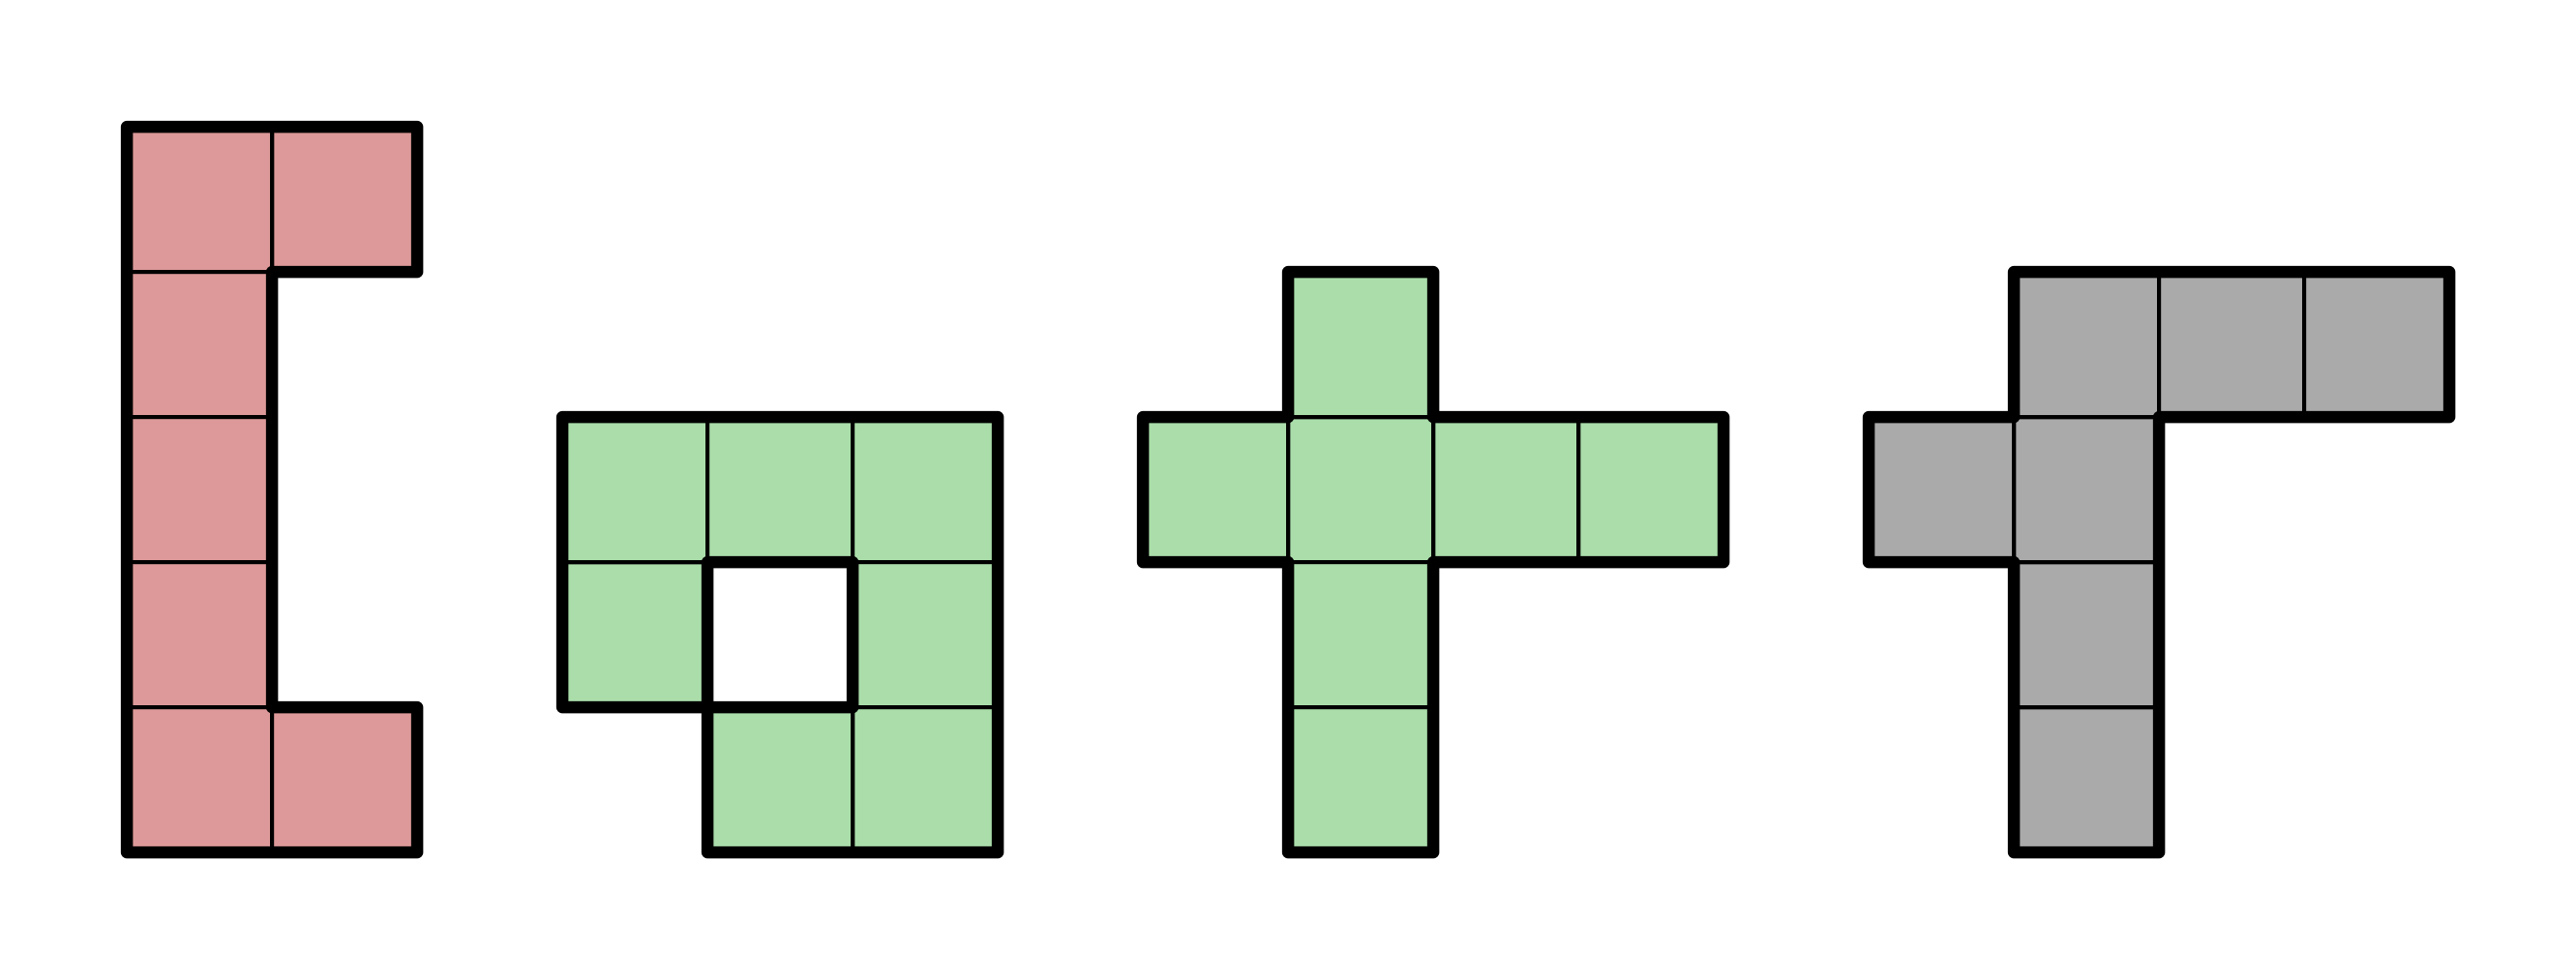 7-block Tetris pieces